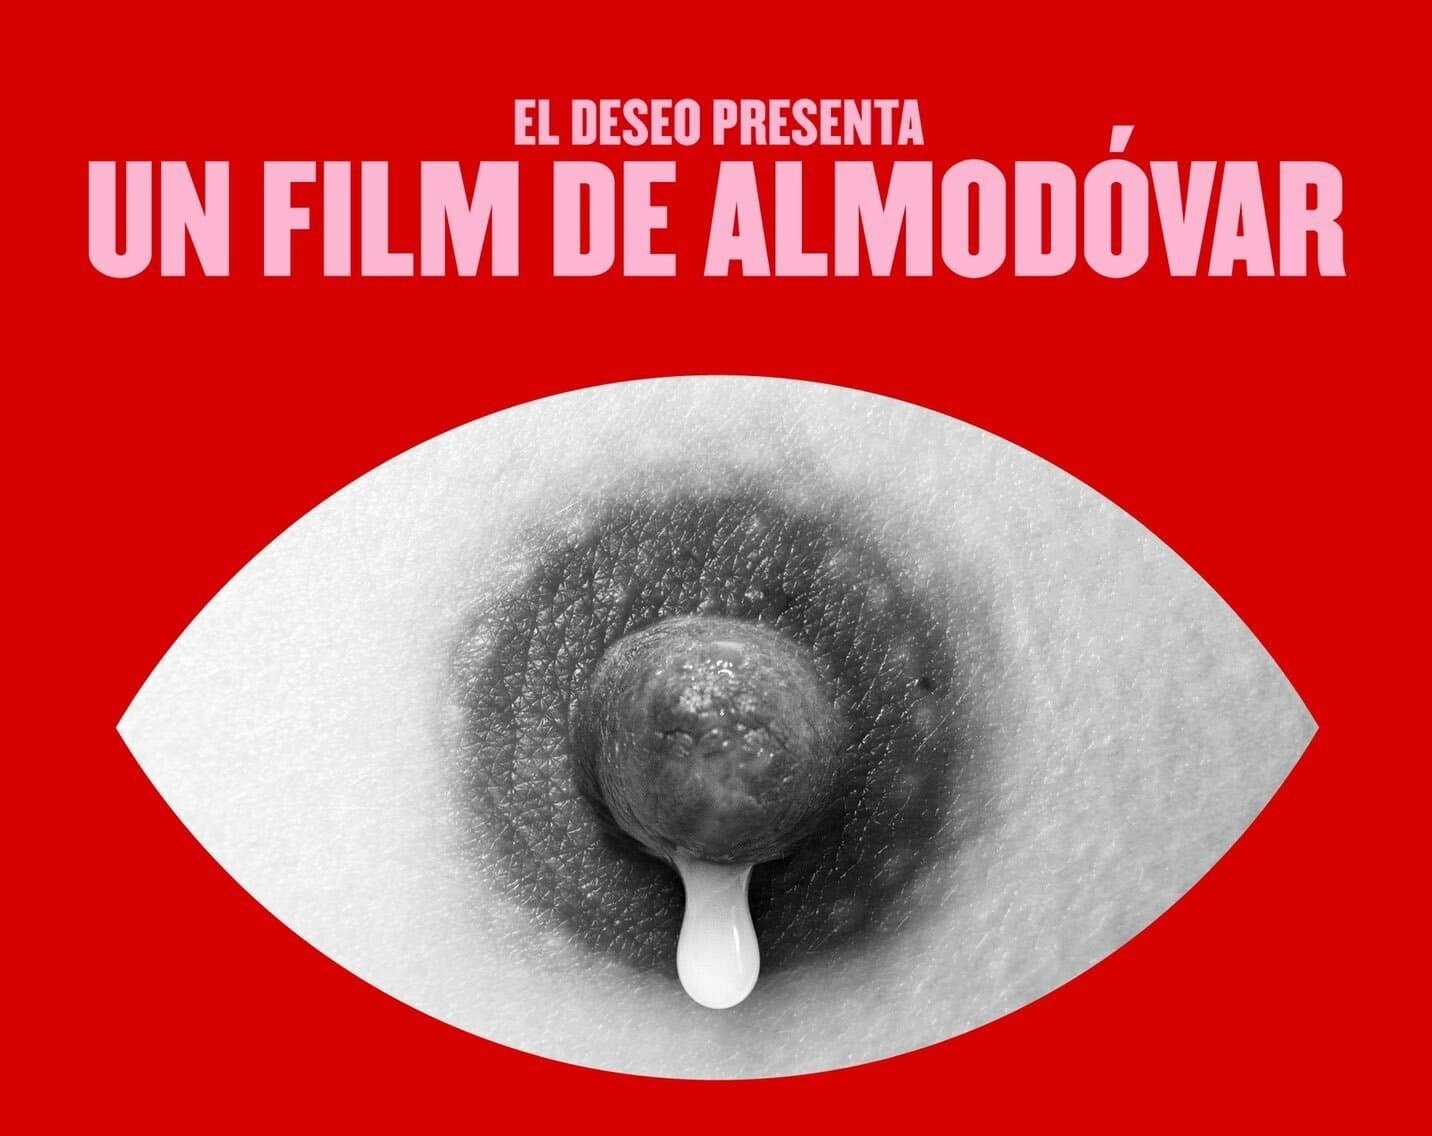 Instagram retira capa de novo filme de Almodóvar por mostrar mamilo